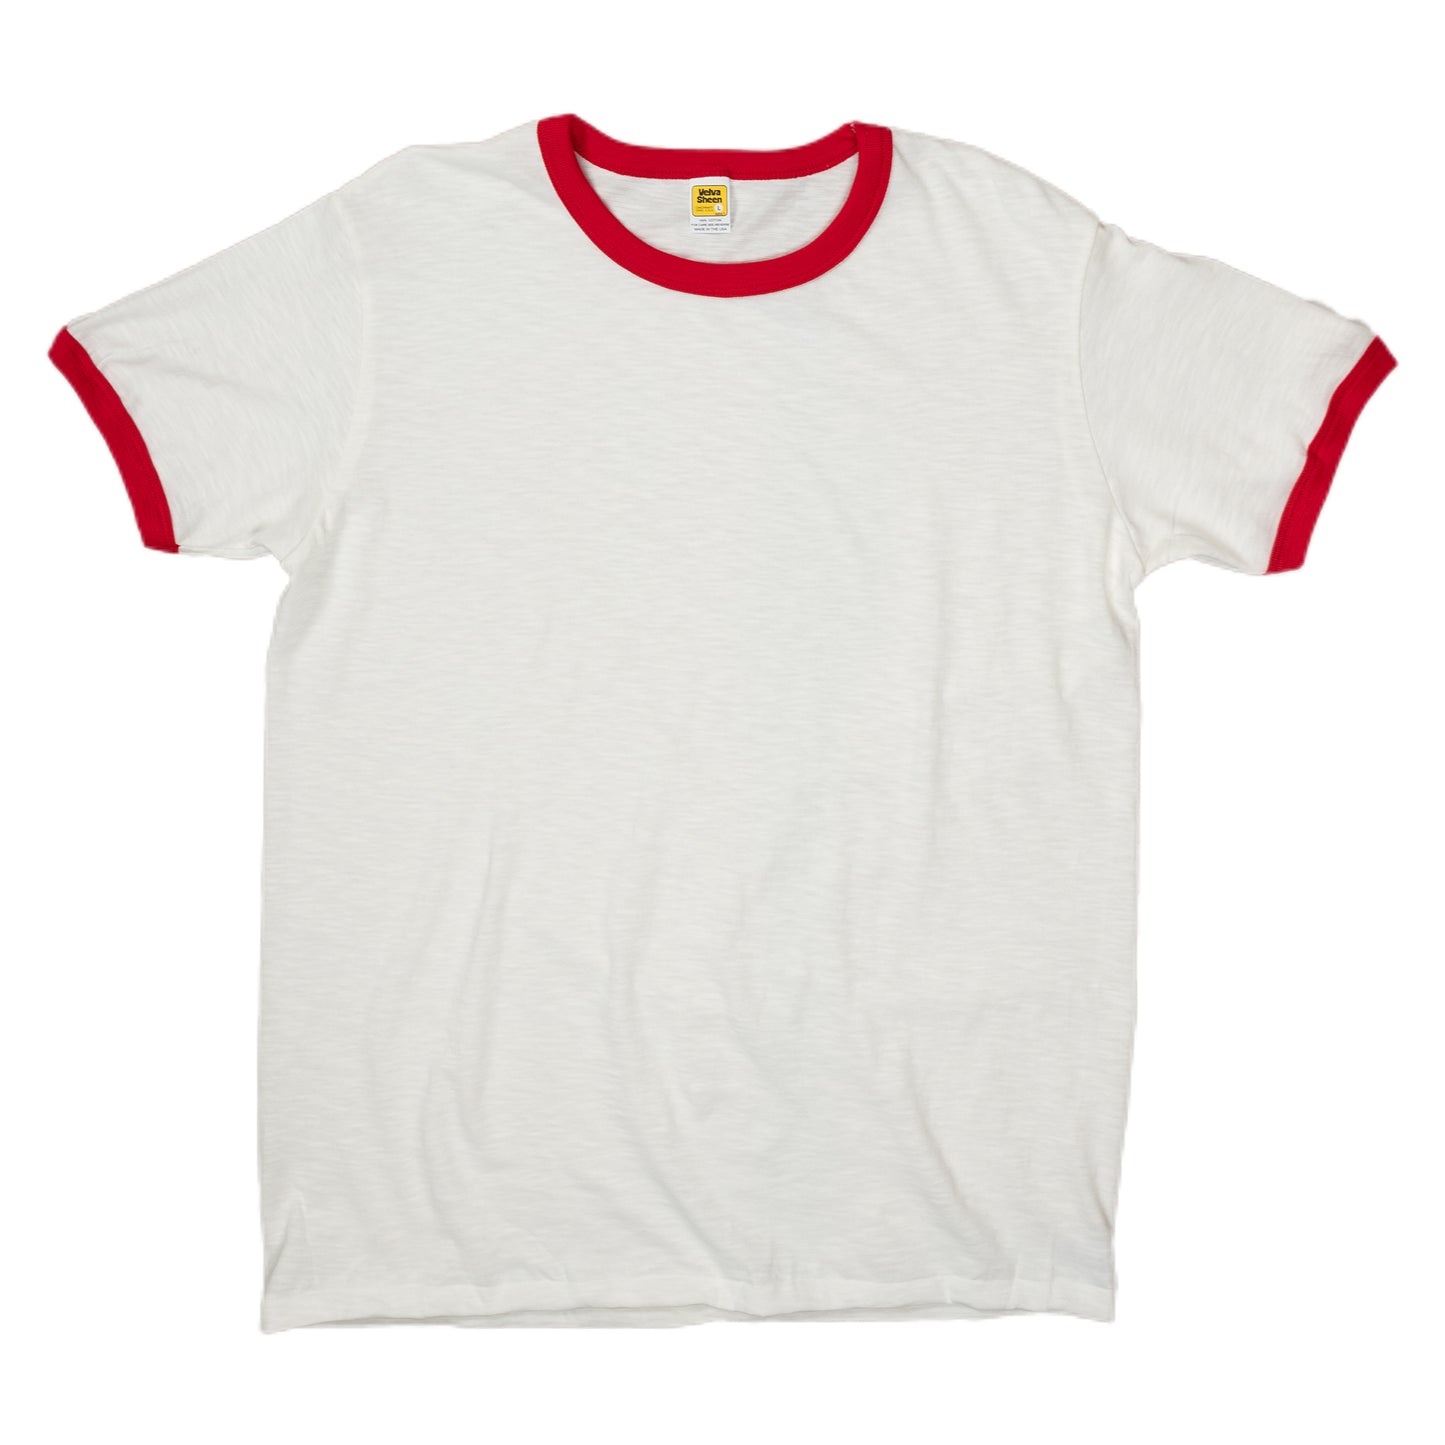 Velva Sheen Ringer T-Shirt - White/Red